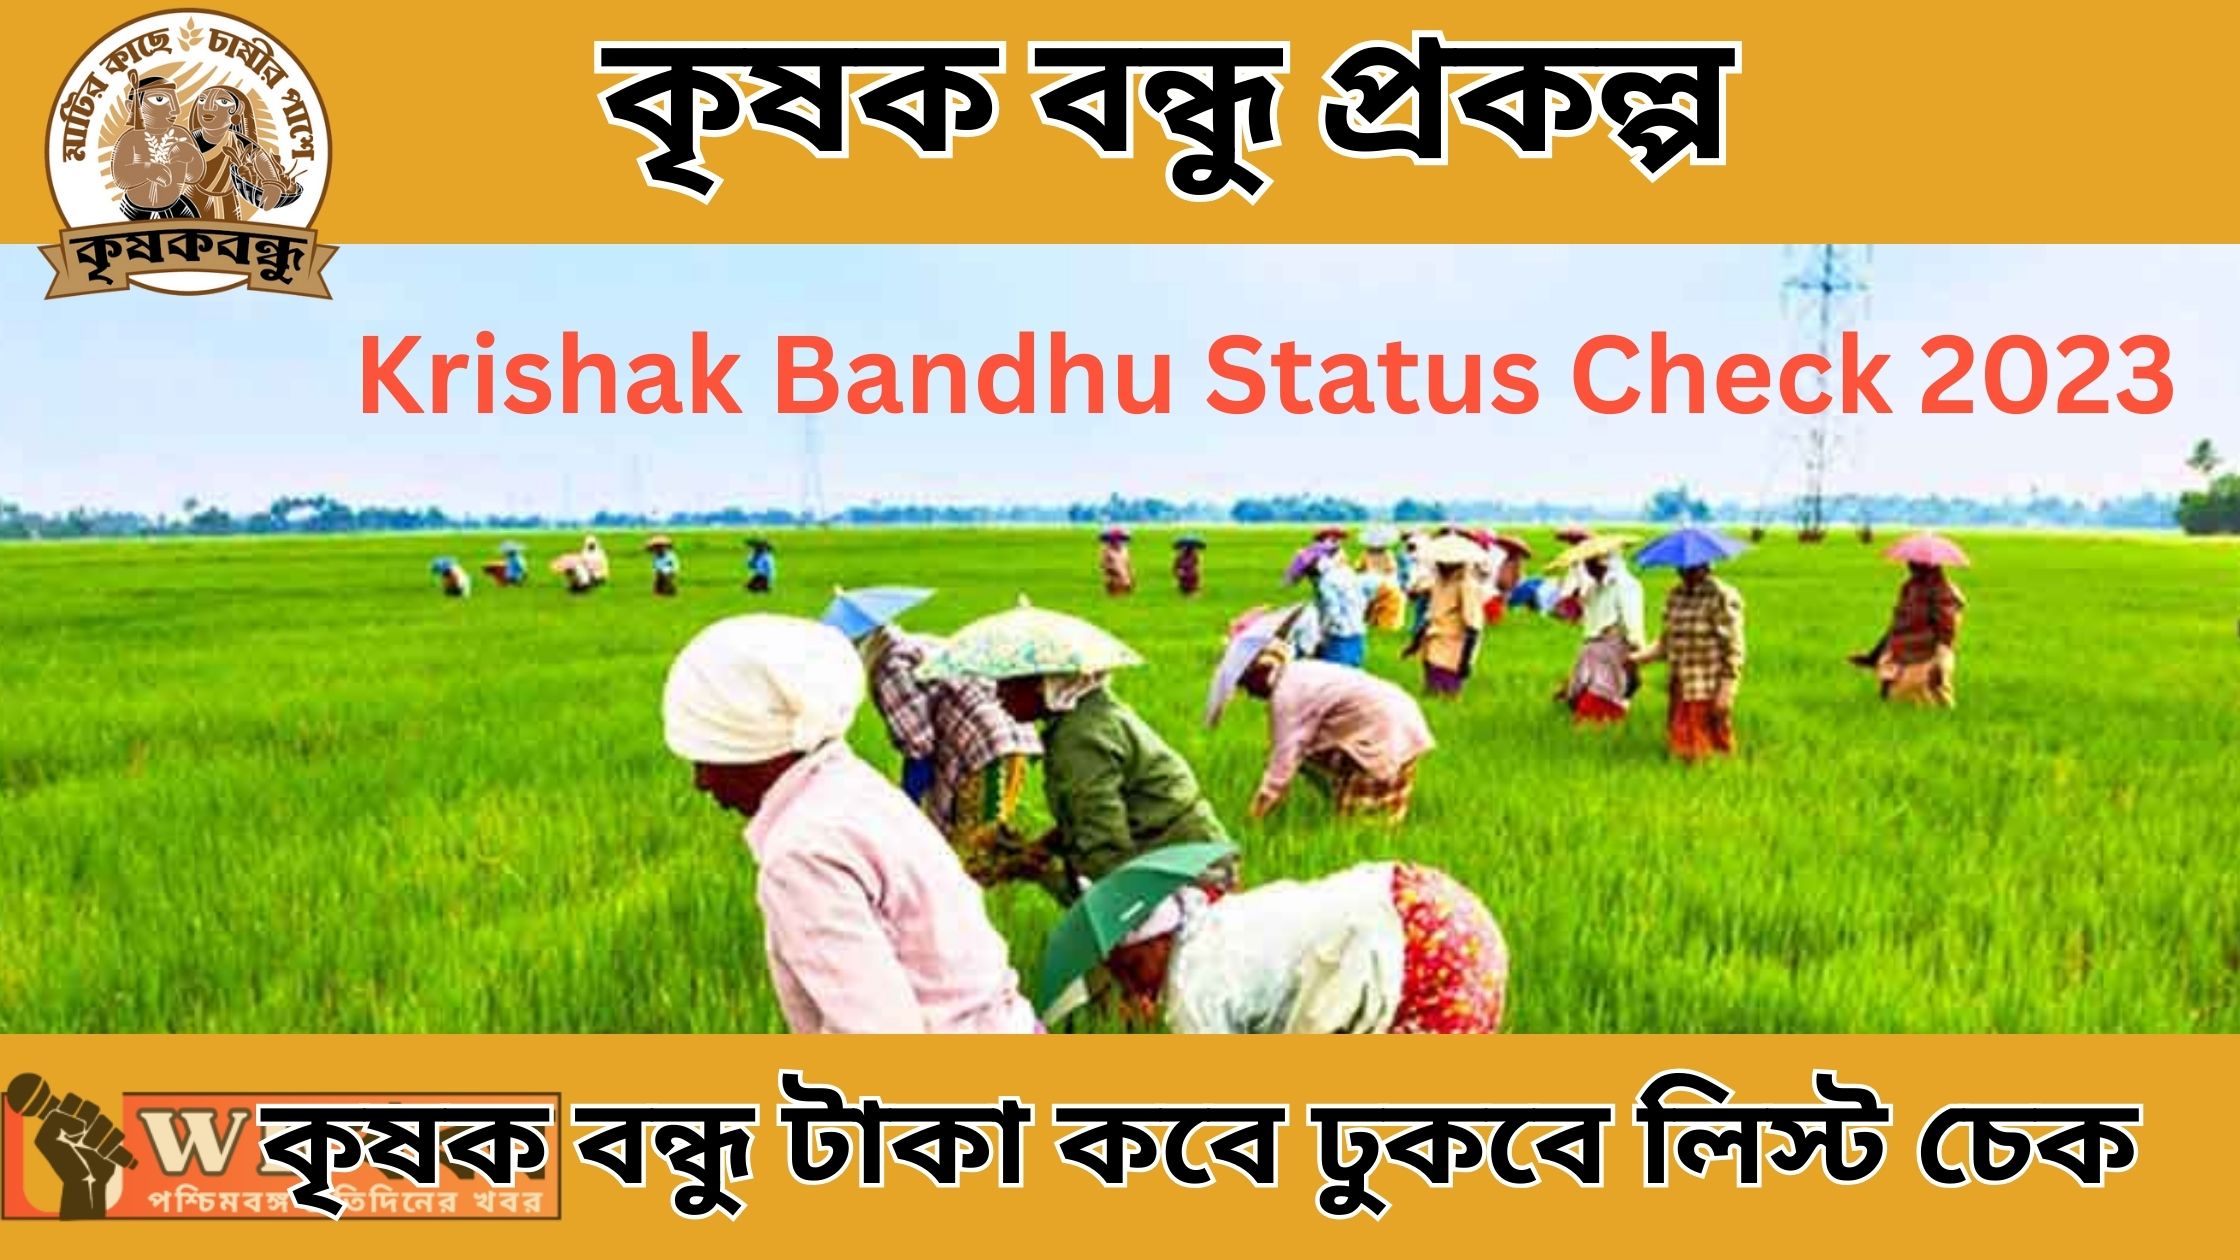 কৃষক বন্ধু টাকা কবে ঢুকবে লিস্ট চেক 2023 How To Krishak Bandhu Status Check 2023